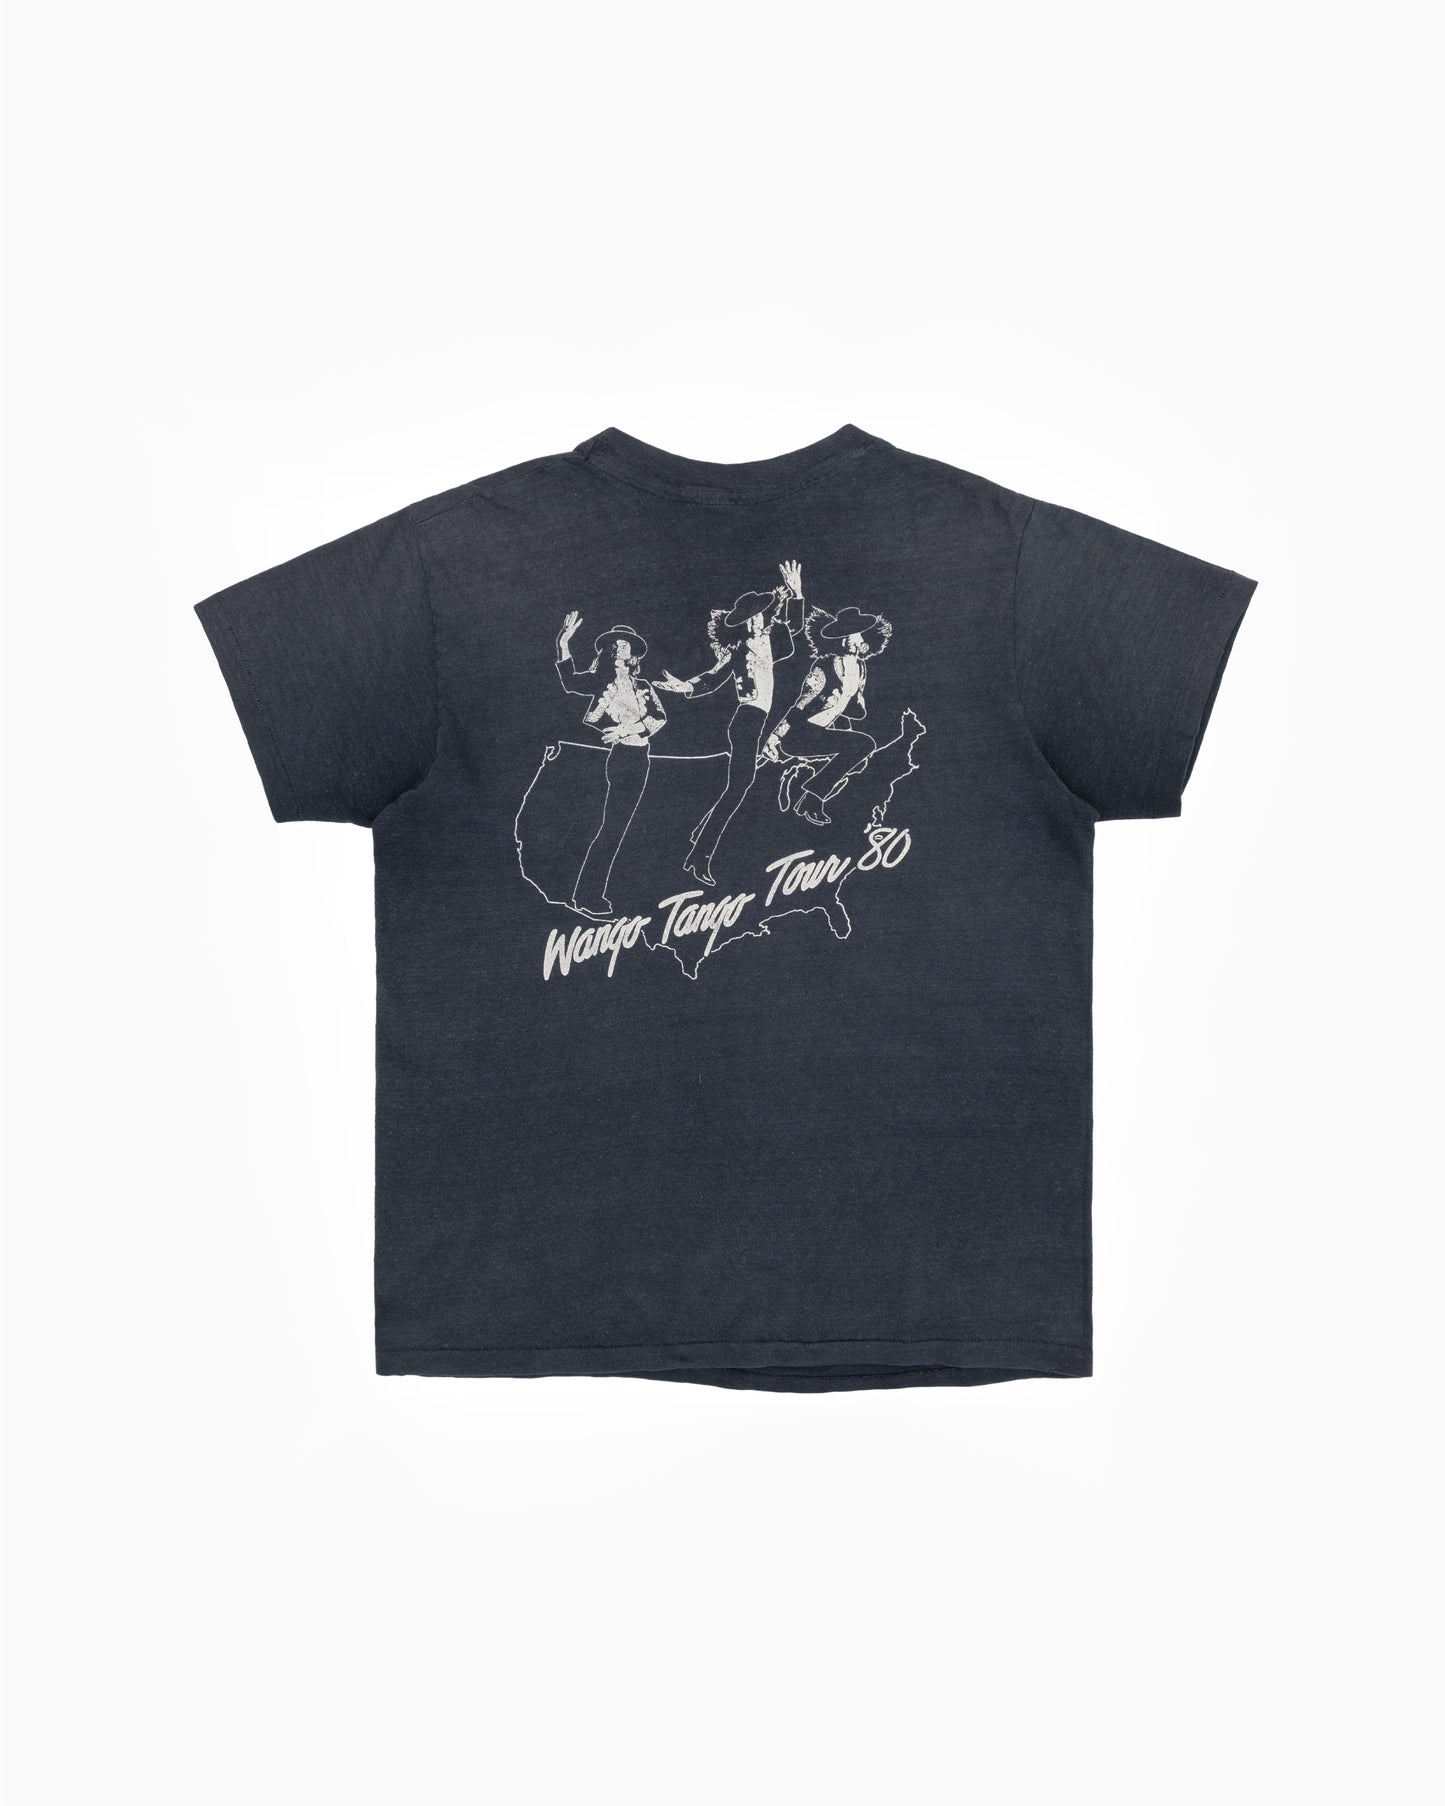 1980 Ted Nugent Scream Dream Tour T-Shirt